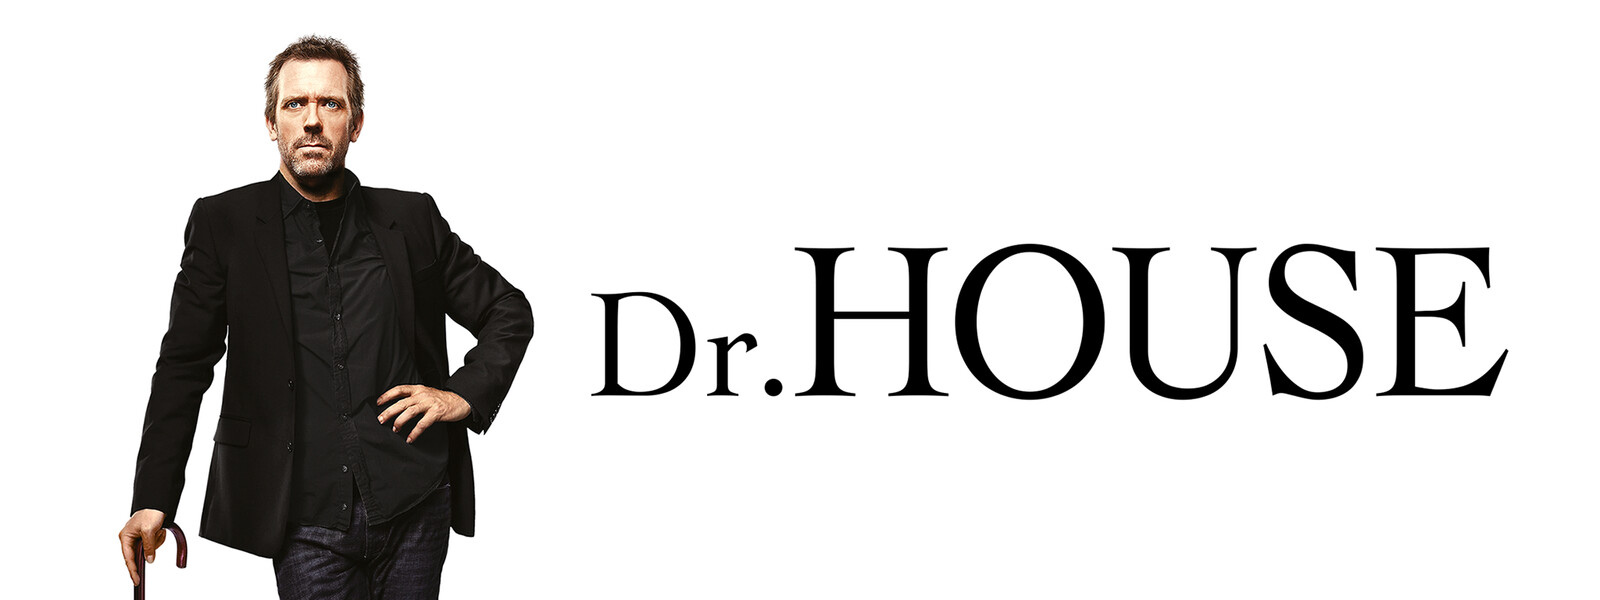 Dr. HOUSE／ドクター・ハウス シーズン5の動画 - Dr. HOUSE／ドクター・ハウス シーズン2